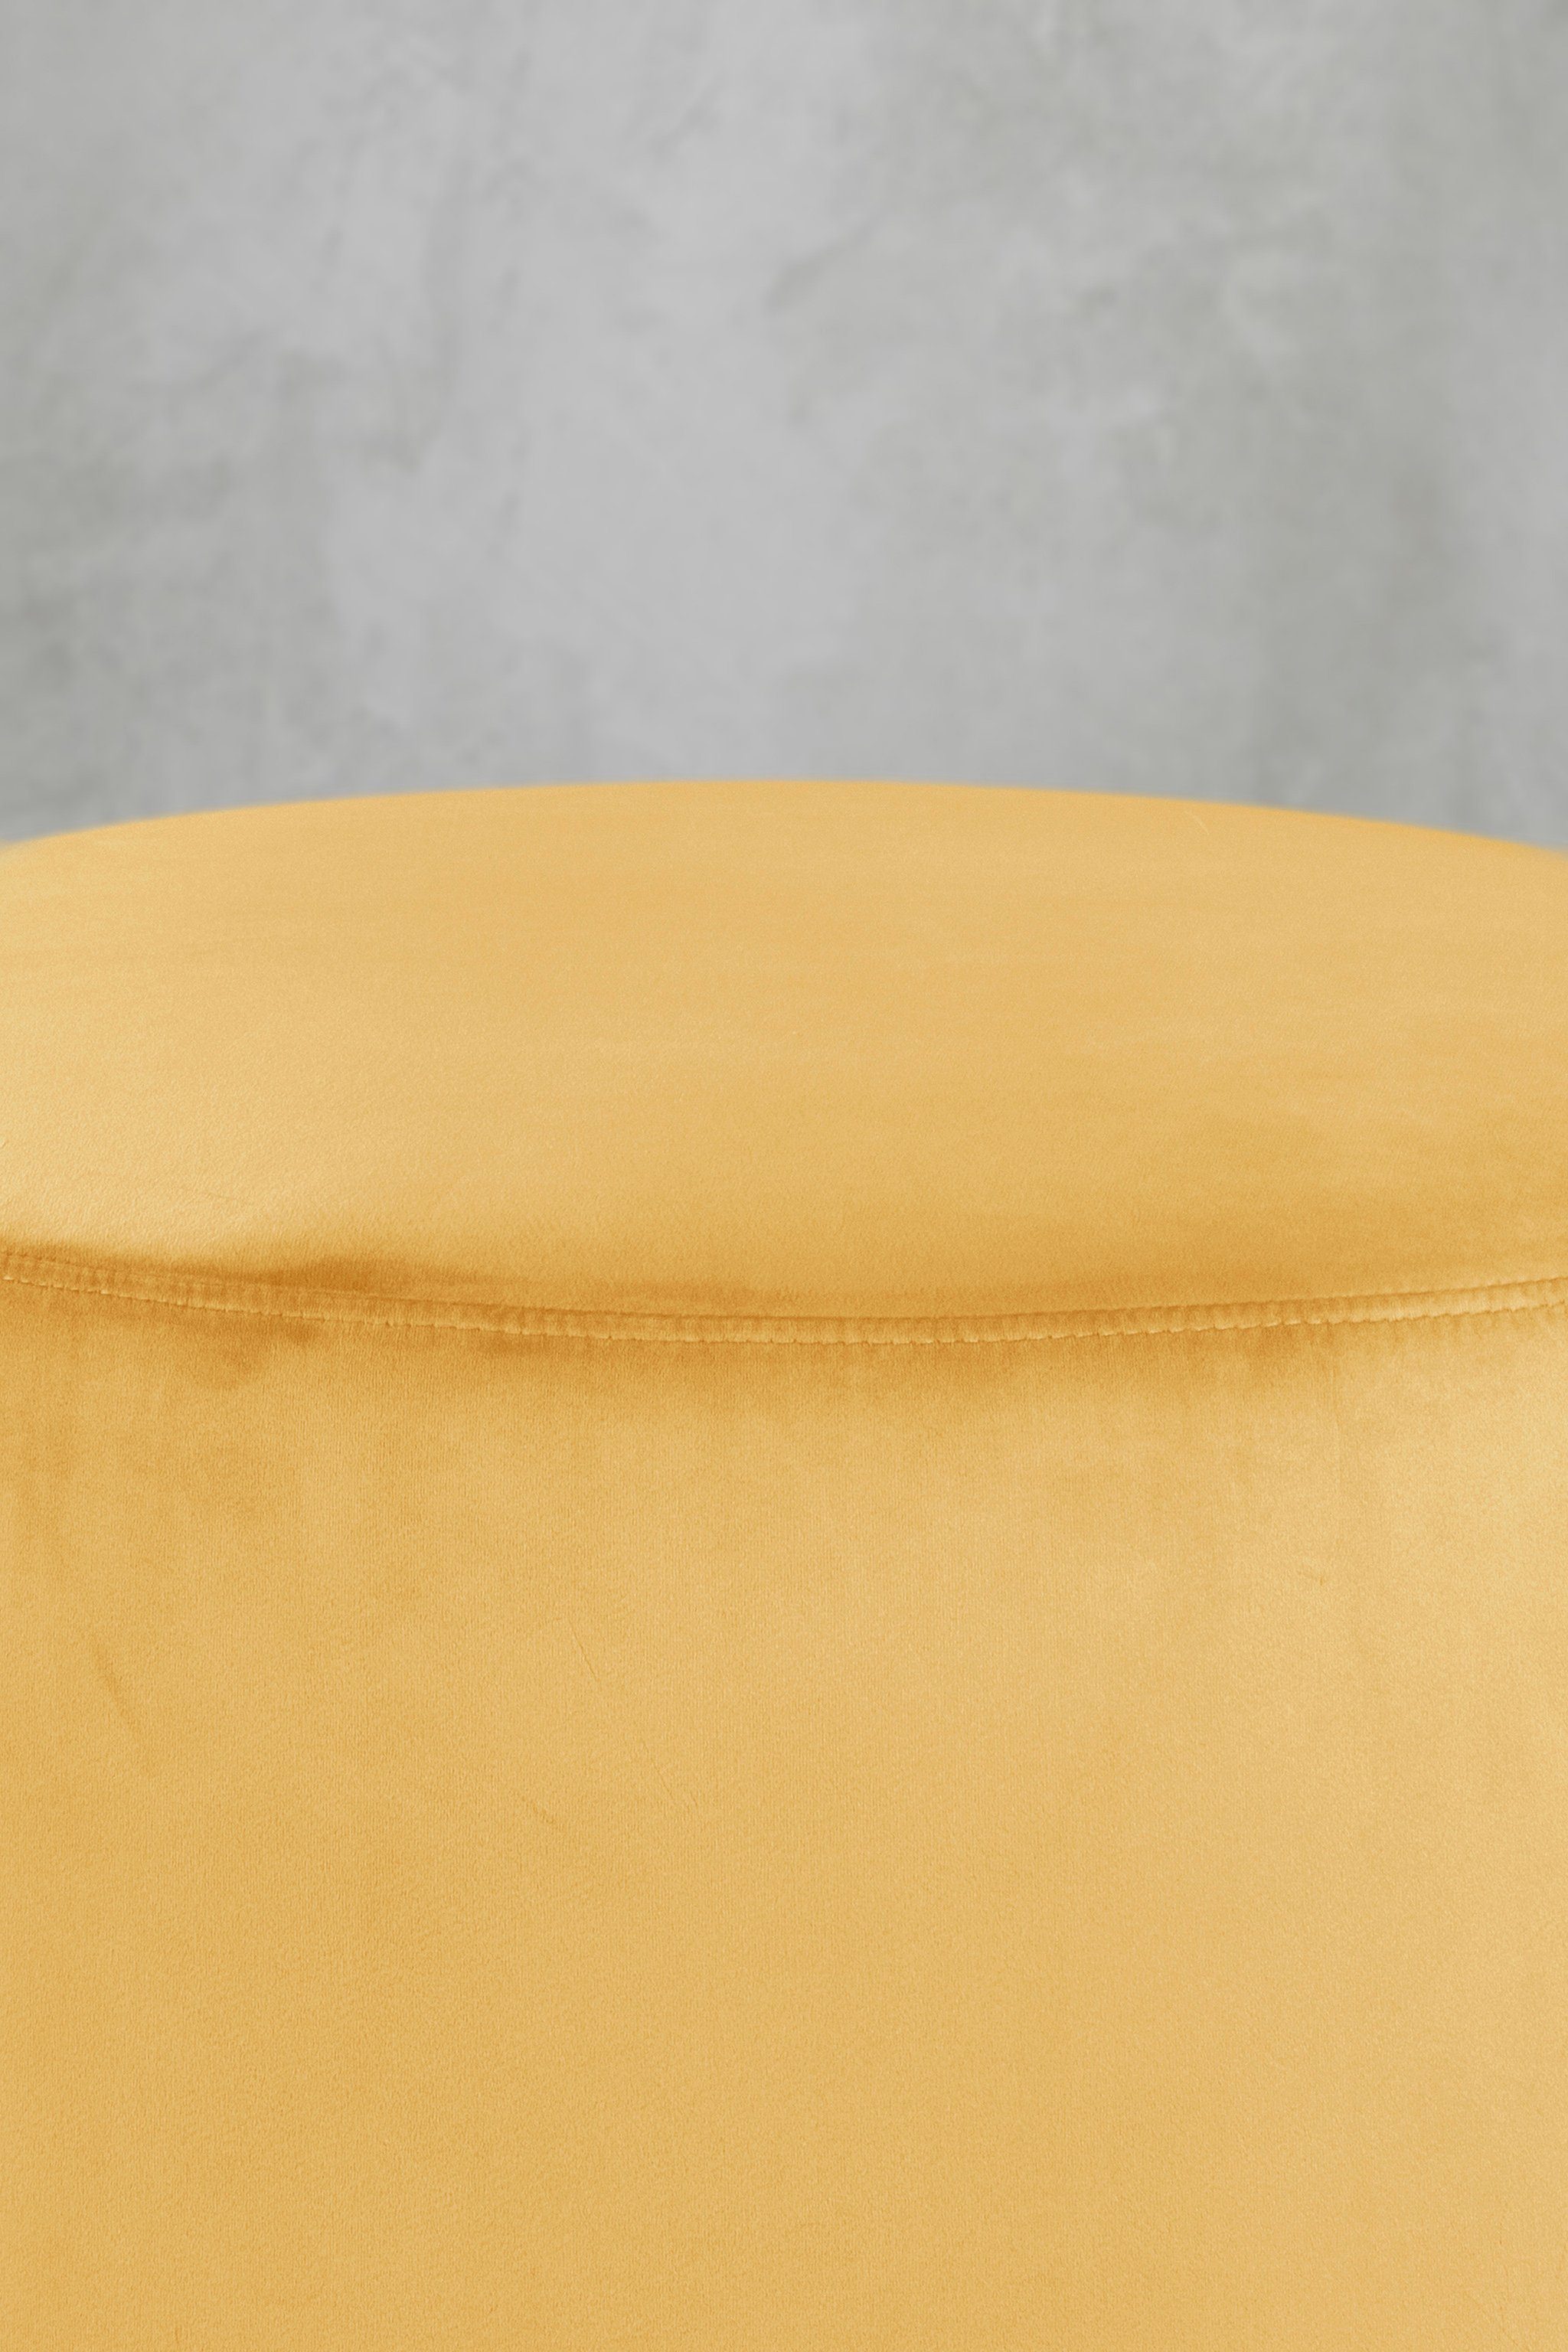 carla&marge Pouf Epomella (47x55x55 mit Yellow Sitzhocker Gelb cm), in Samtbezug schmuseweichem Mustard